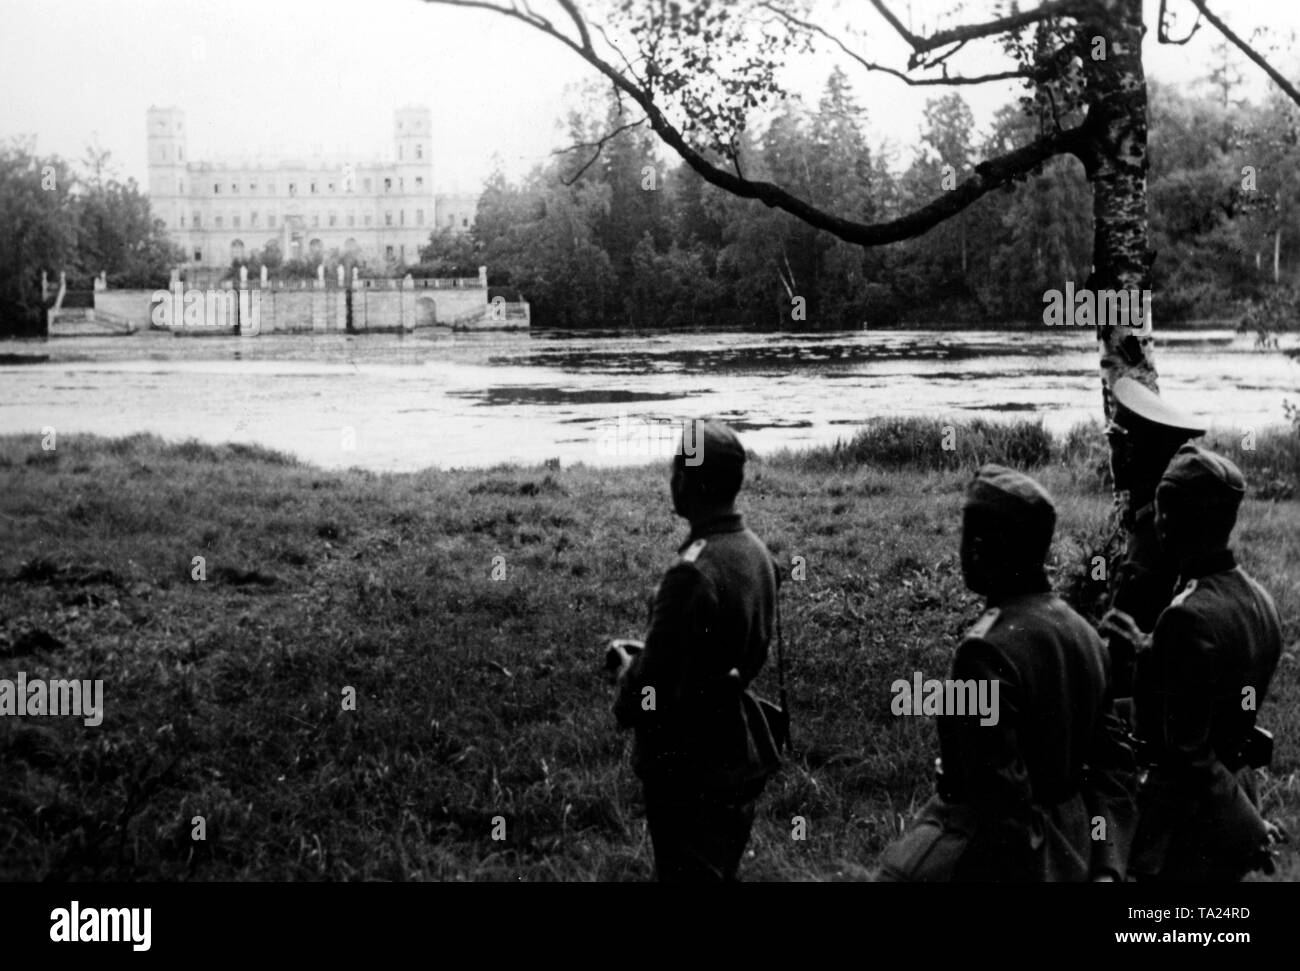 Les officiers espagnols d'oeil sur le lac du parc du palais. L'ancien Palais Gatchina dans la ville portant le même nom (alors Krasnogwardeisk) avait été occupé par la Wehrmacht pendant près de 2 ans et demi. Photo de l'entreprise de propagande (PK) : correspondant de guerre Hansen. Banque D'Images